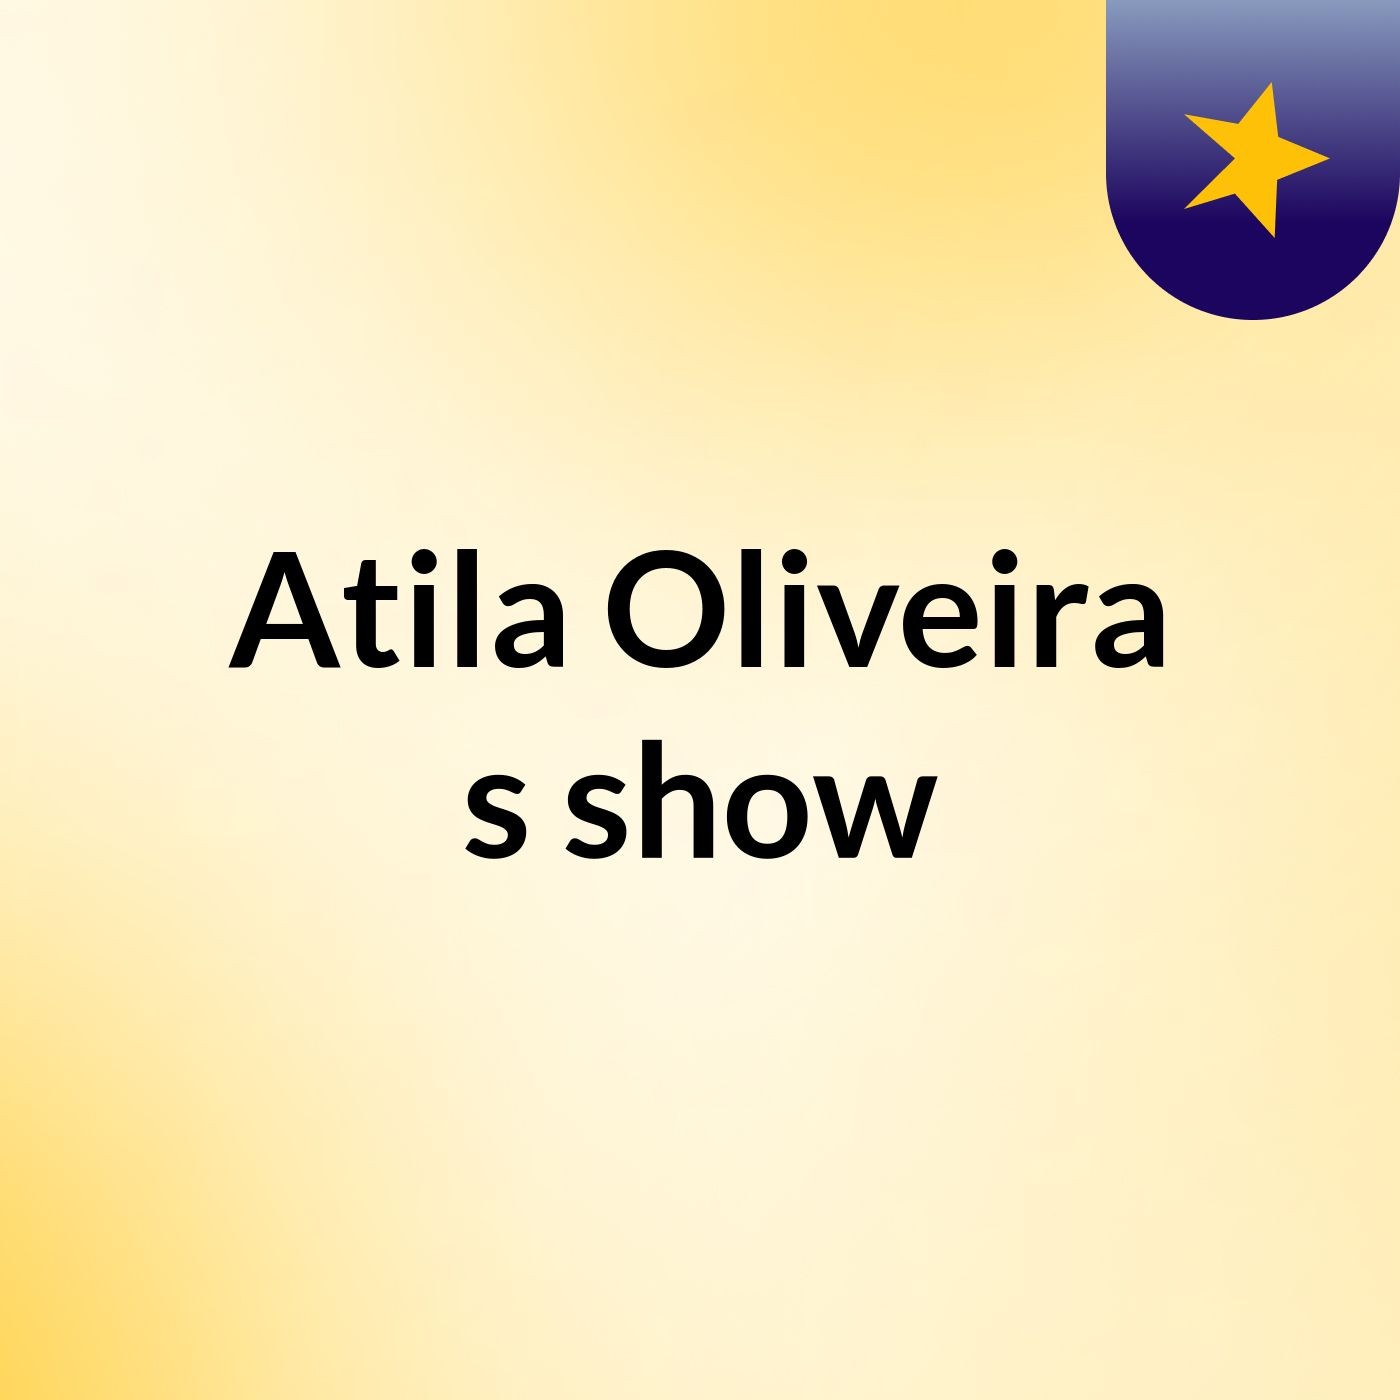 Atila Oliveira's show